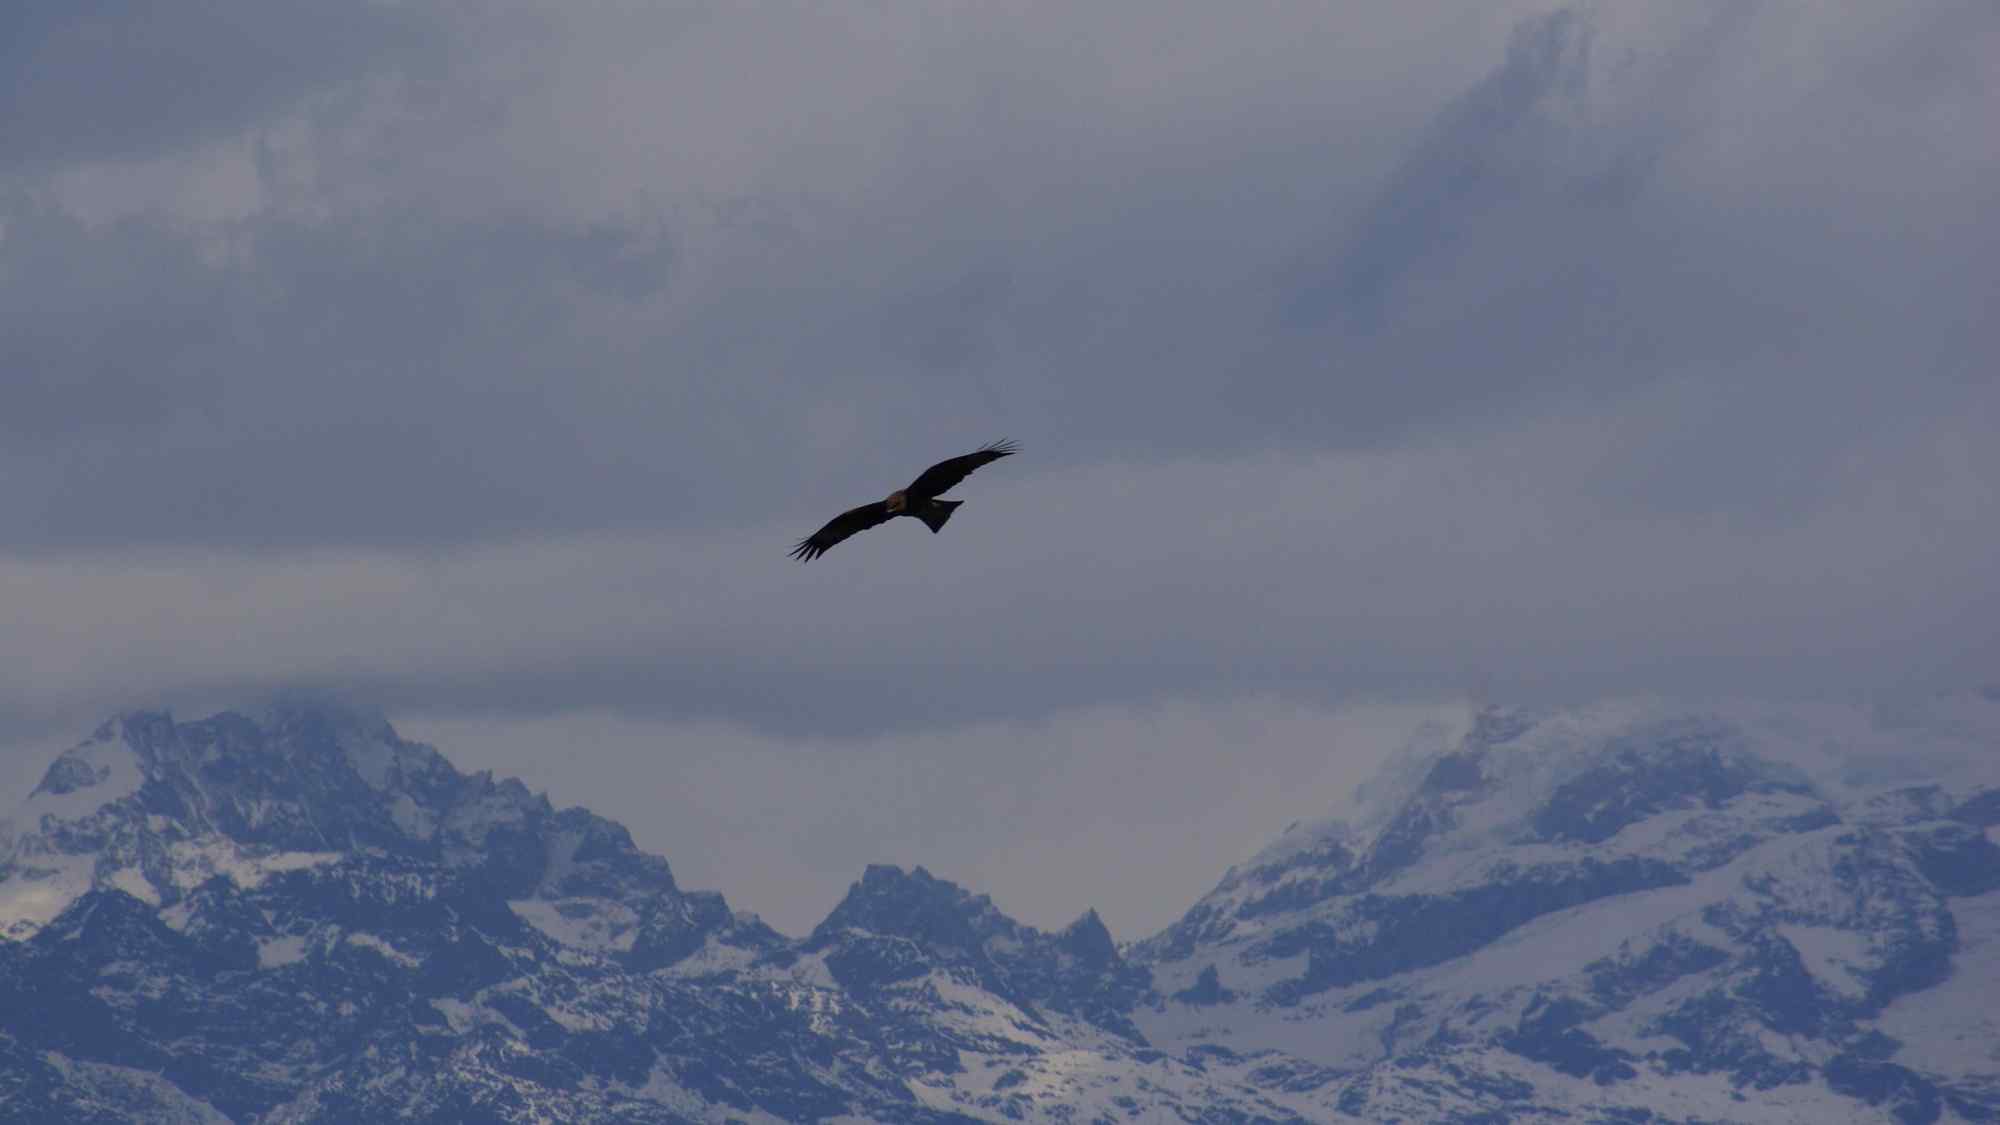 雪山之巅翱翔的老鹰唯美风景图片